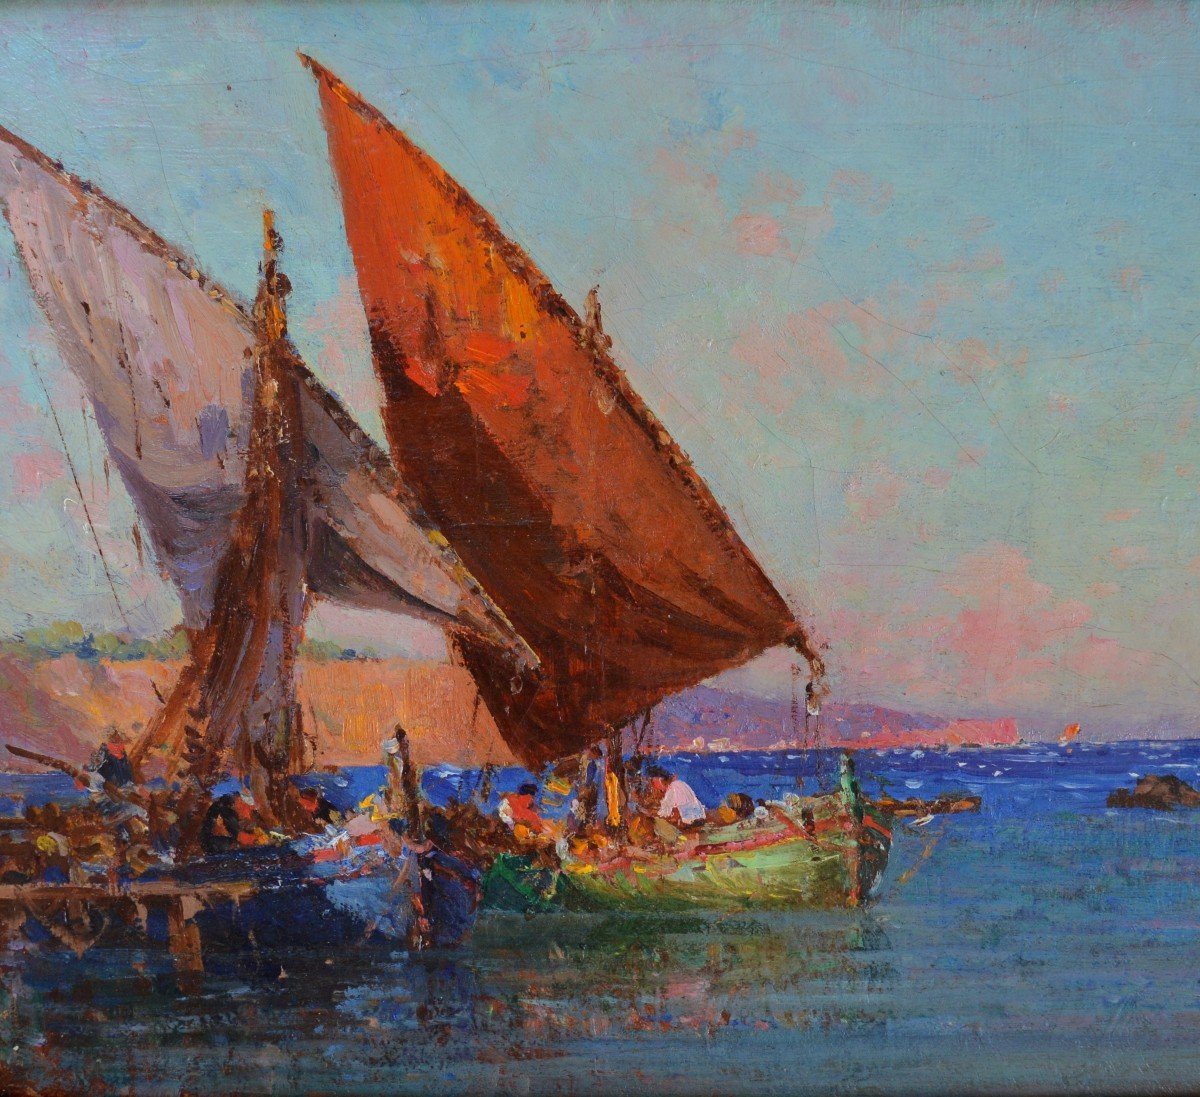 NARDI François (1861-1936) "Pêcheurs dans l'Anse Magaud, Toulon" Provence Marseille Cap Brun